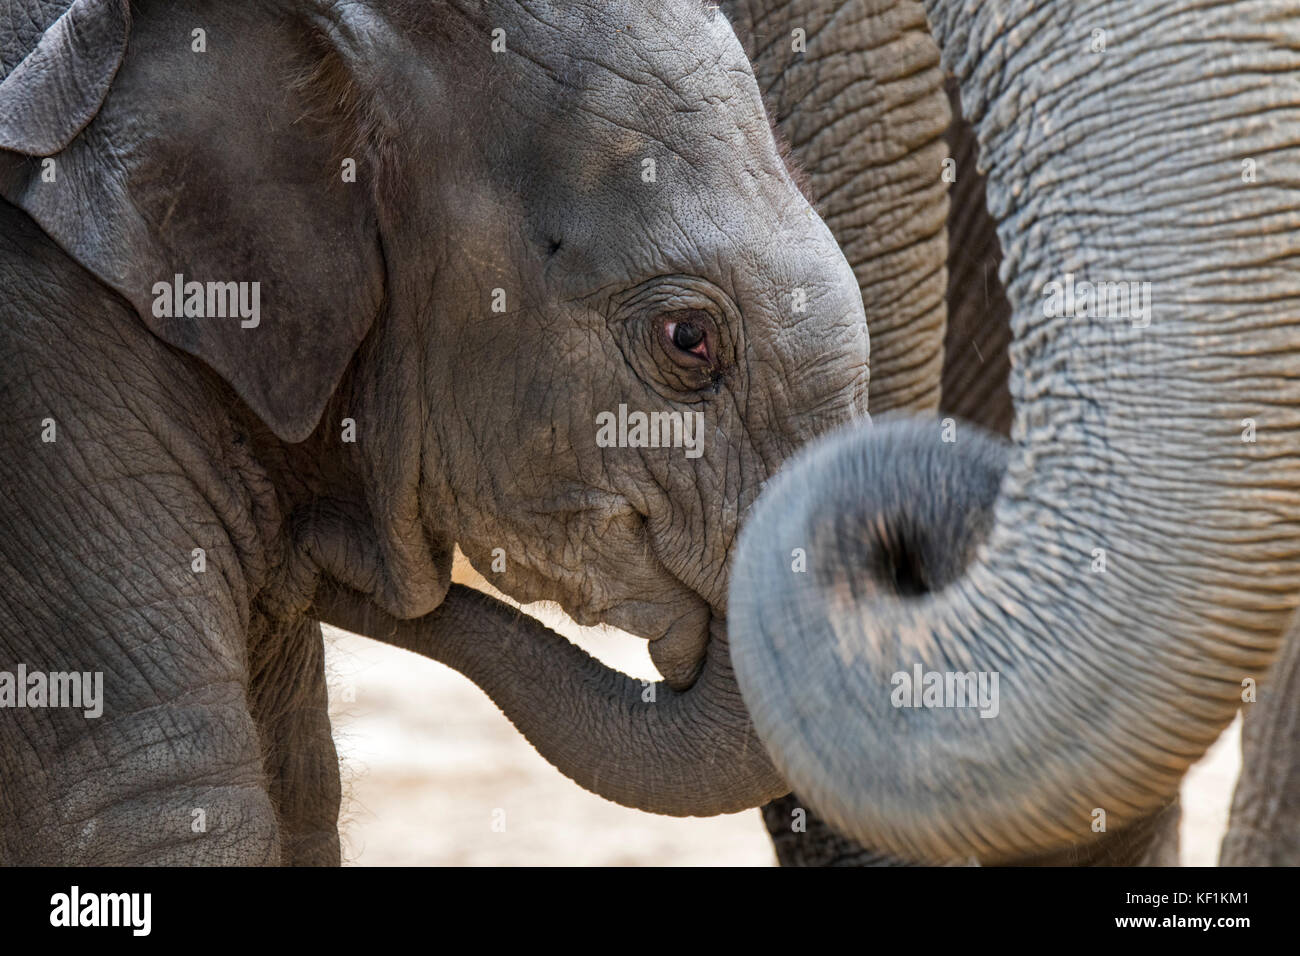 Près de trois semaines de veau en troupeau d'éléphants d'Asie / l'éléphant d'Asie (Elephas maximus). Banque D'Images